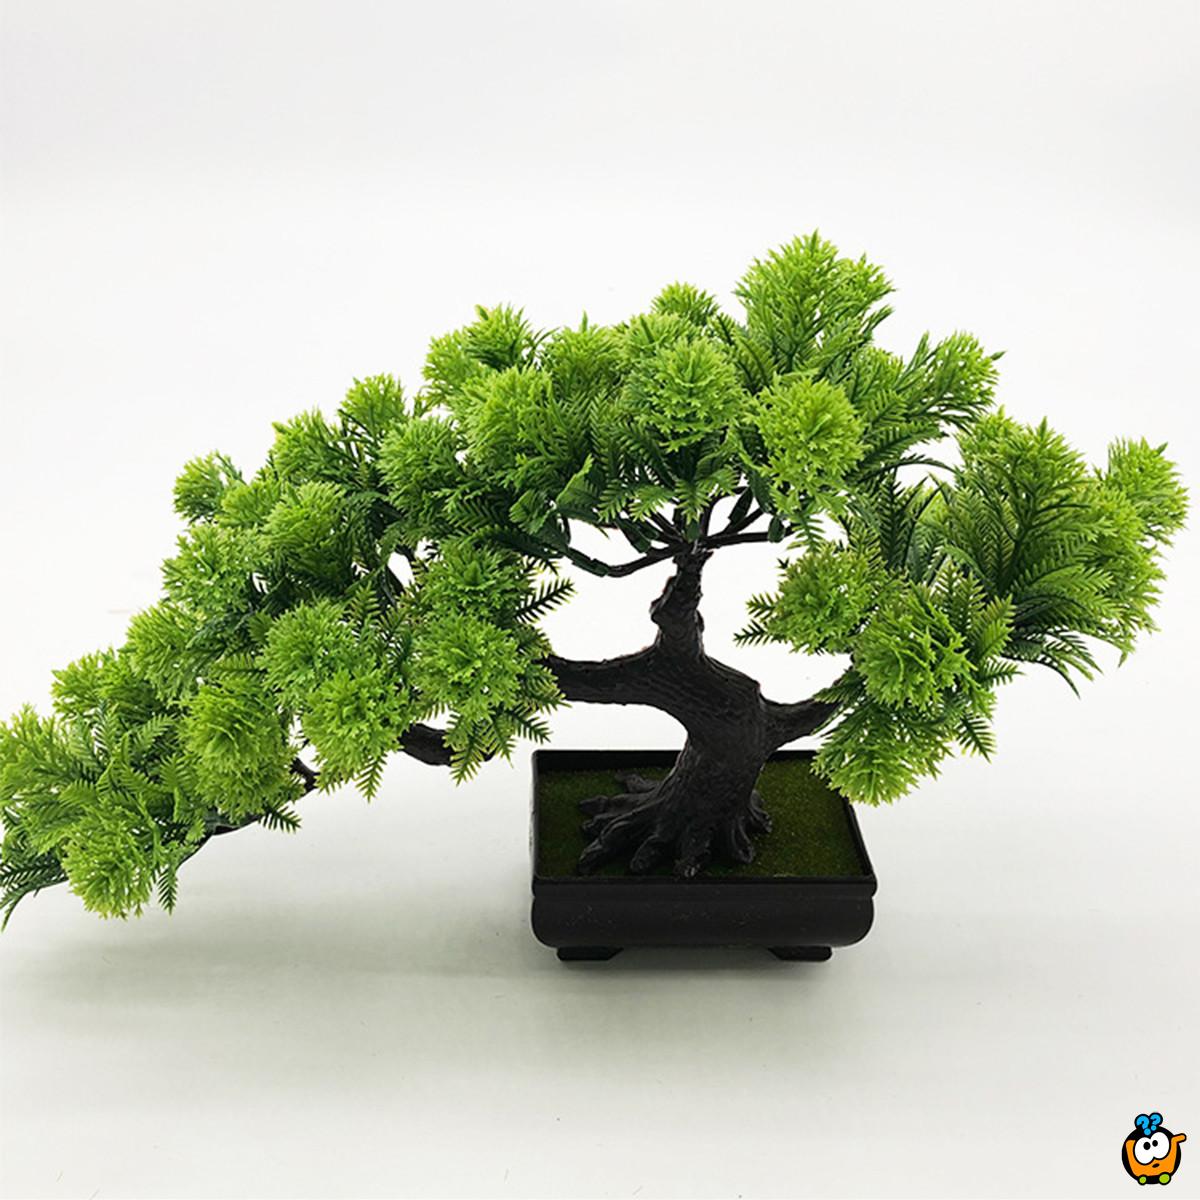 Bonsai plant - veštačka dekorativna biljka